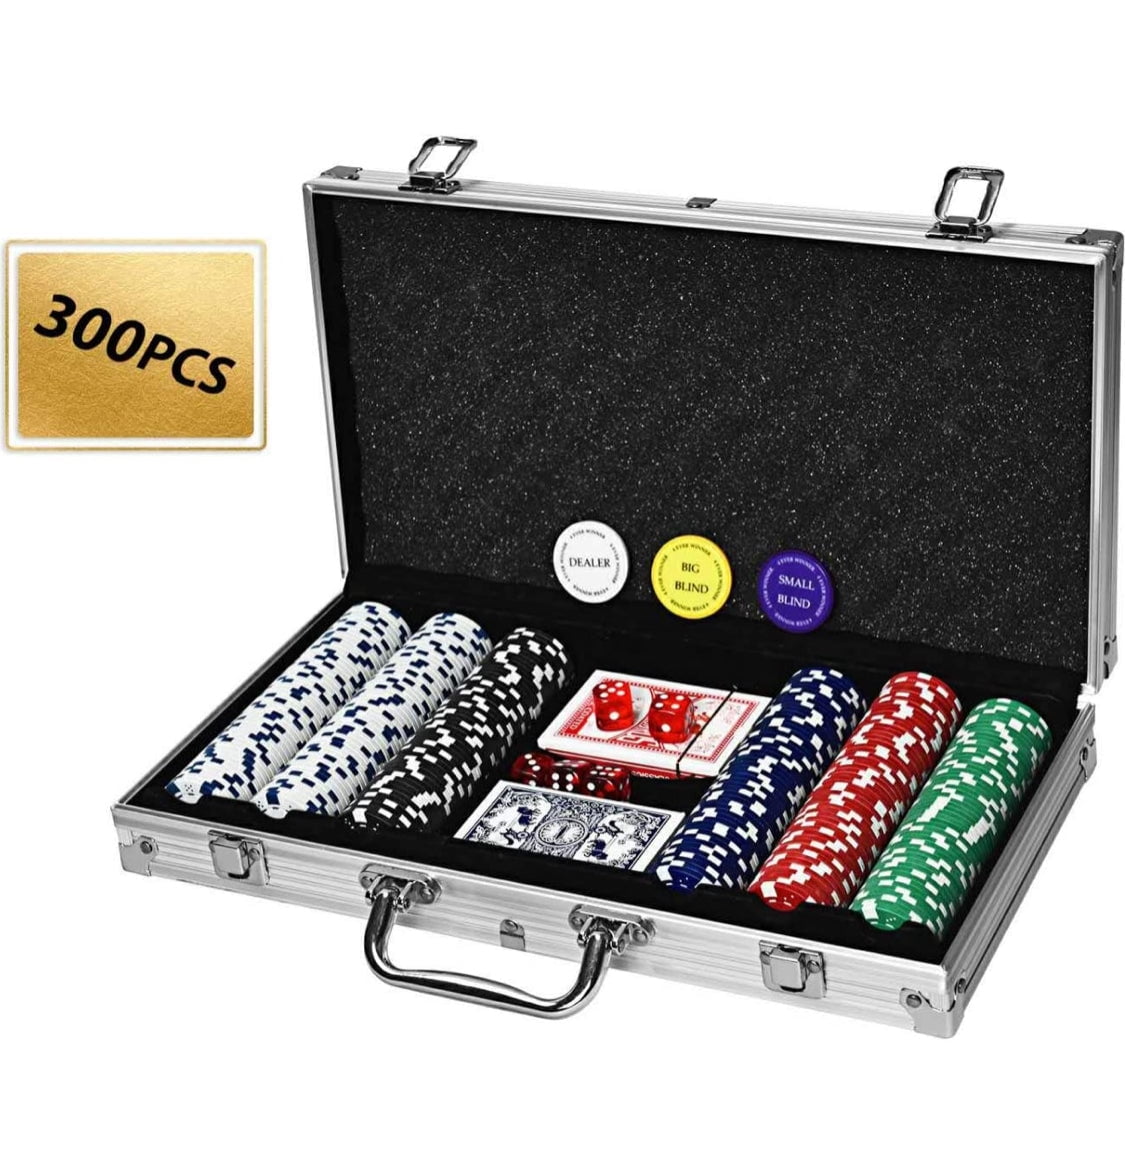 Welsprekend Sluimeren Heel Casino Poker Chip Set 300 Piece Clay in Travel Case from germfree -  Walmart.com